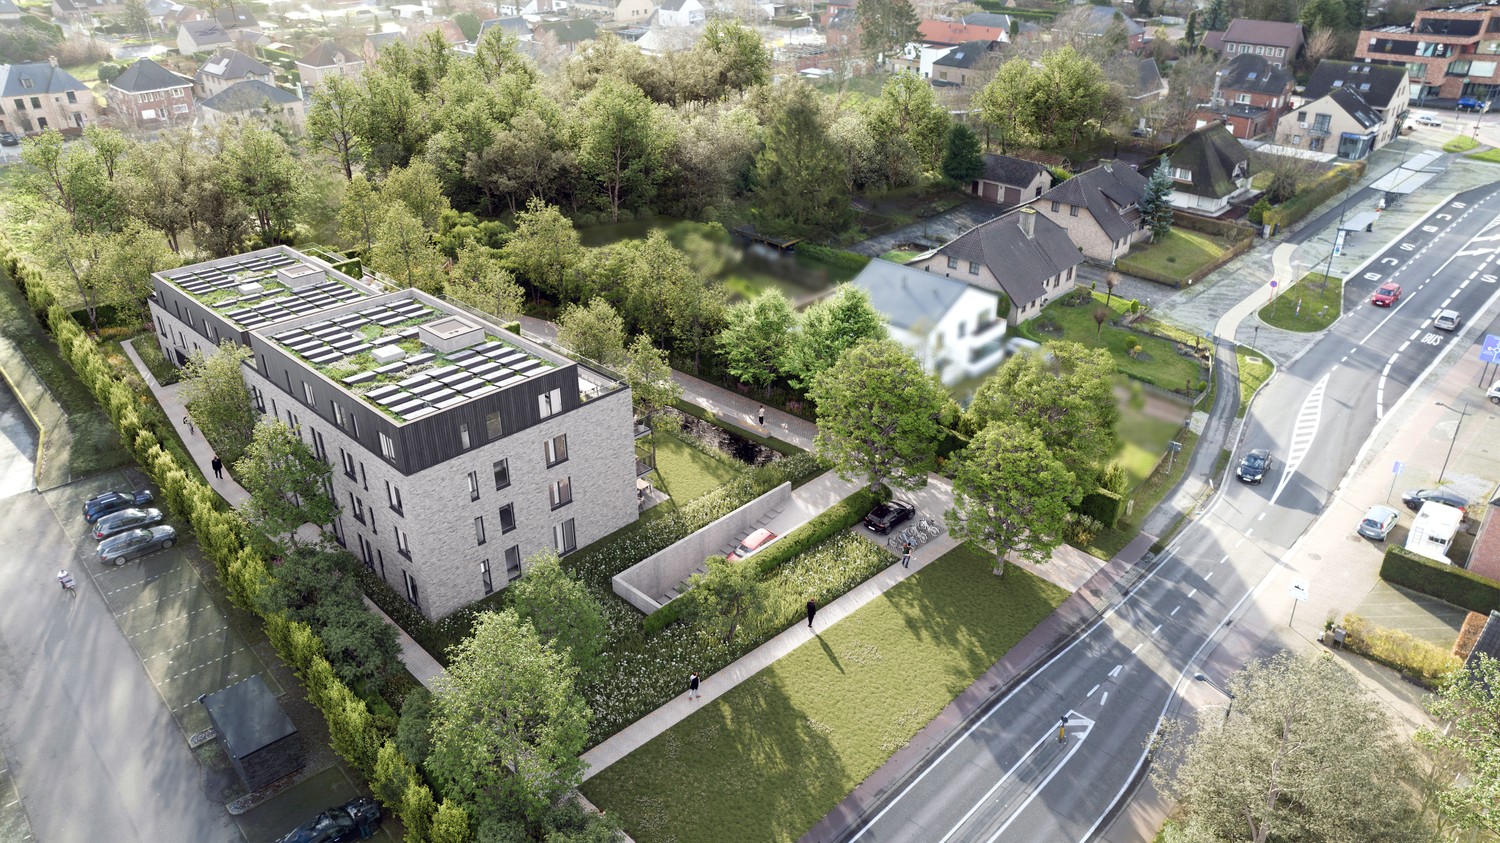 Residentie 'De Oester' : duurzaam, comfortabel, uitzonderlijk energiezuinig gelijkvloers appartement te Hechtel foto 1